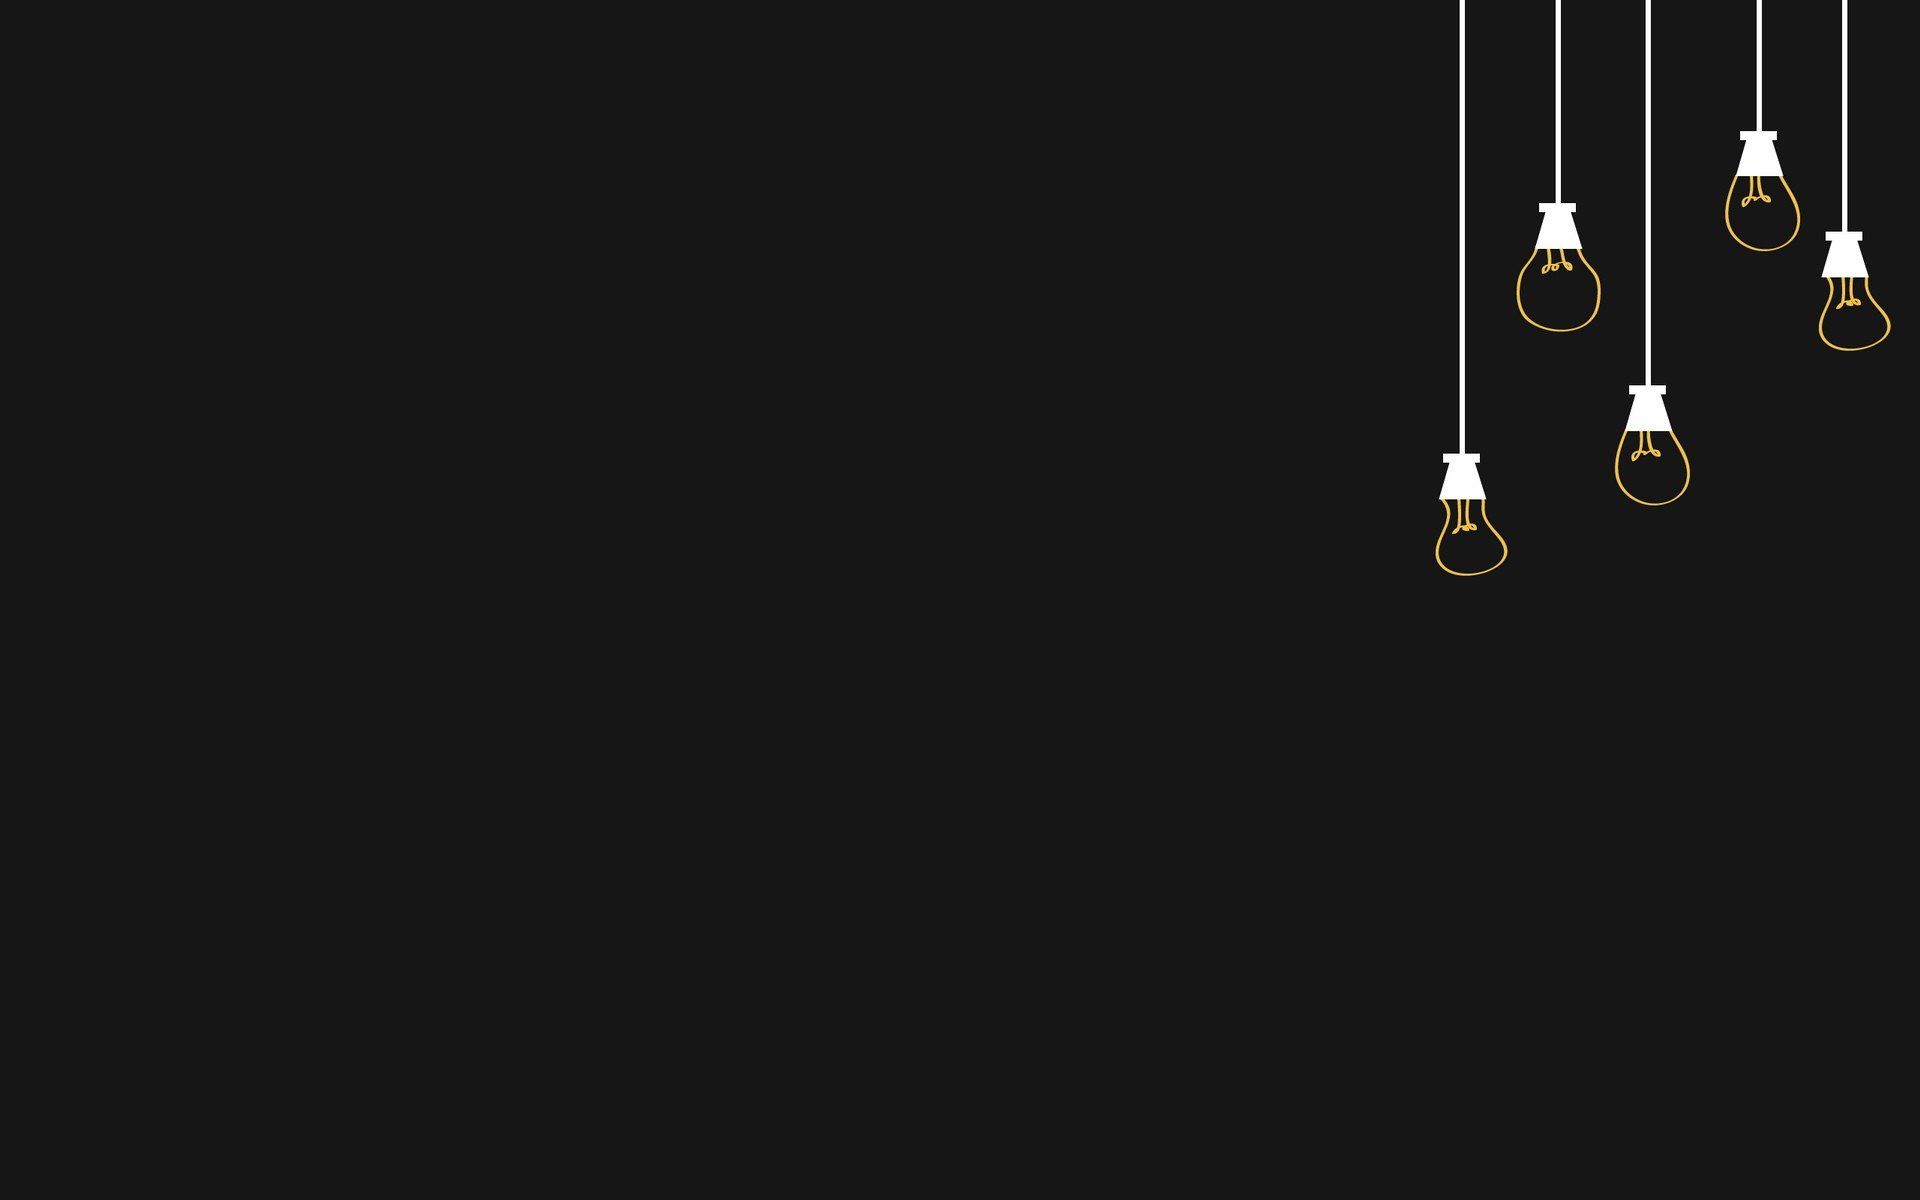  دانلود والپیپر زیبا مینیمال لامپ با پس زمینه سیاه